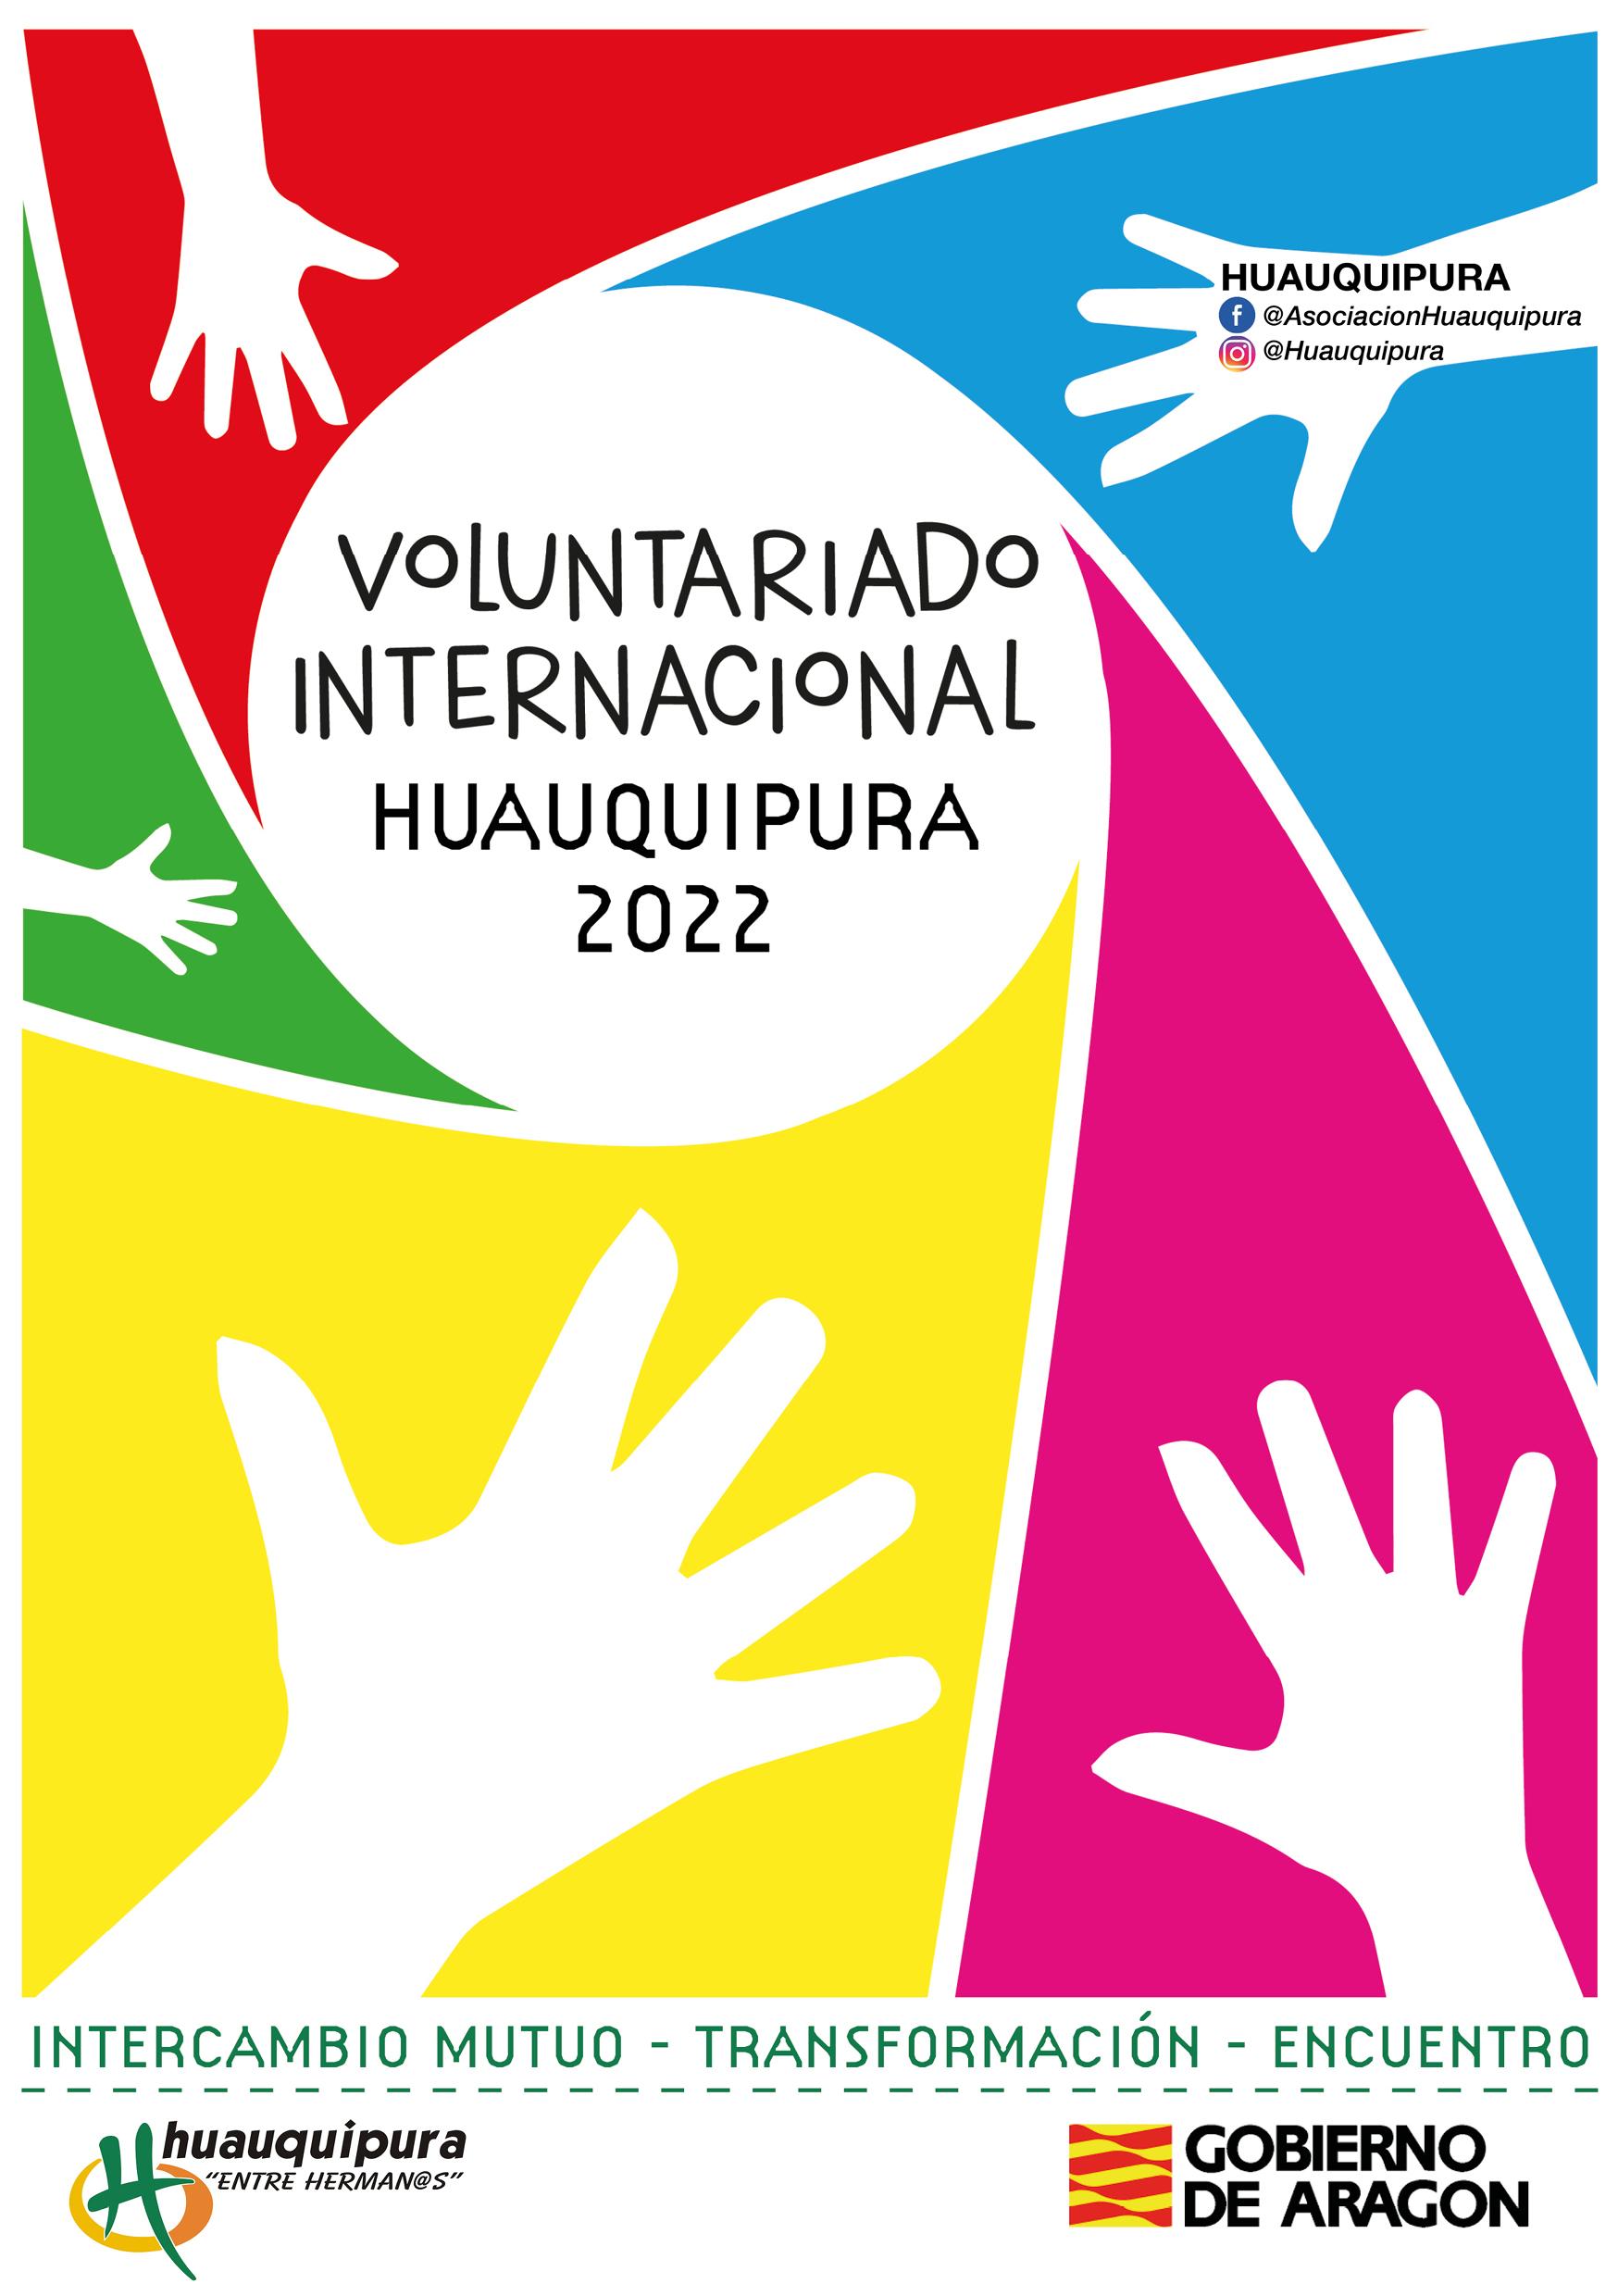 Programa de voluntariado internacional y local para la transformación personal y social desde el conocimiento intercultural y el aprendizaje mutuo